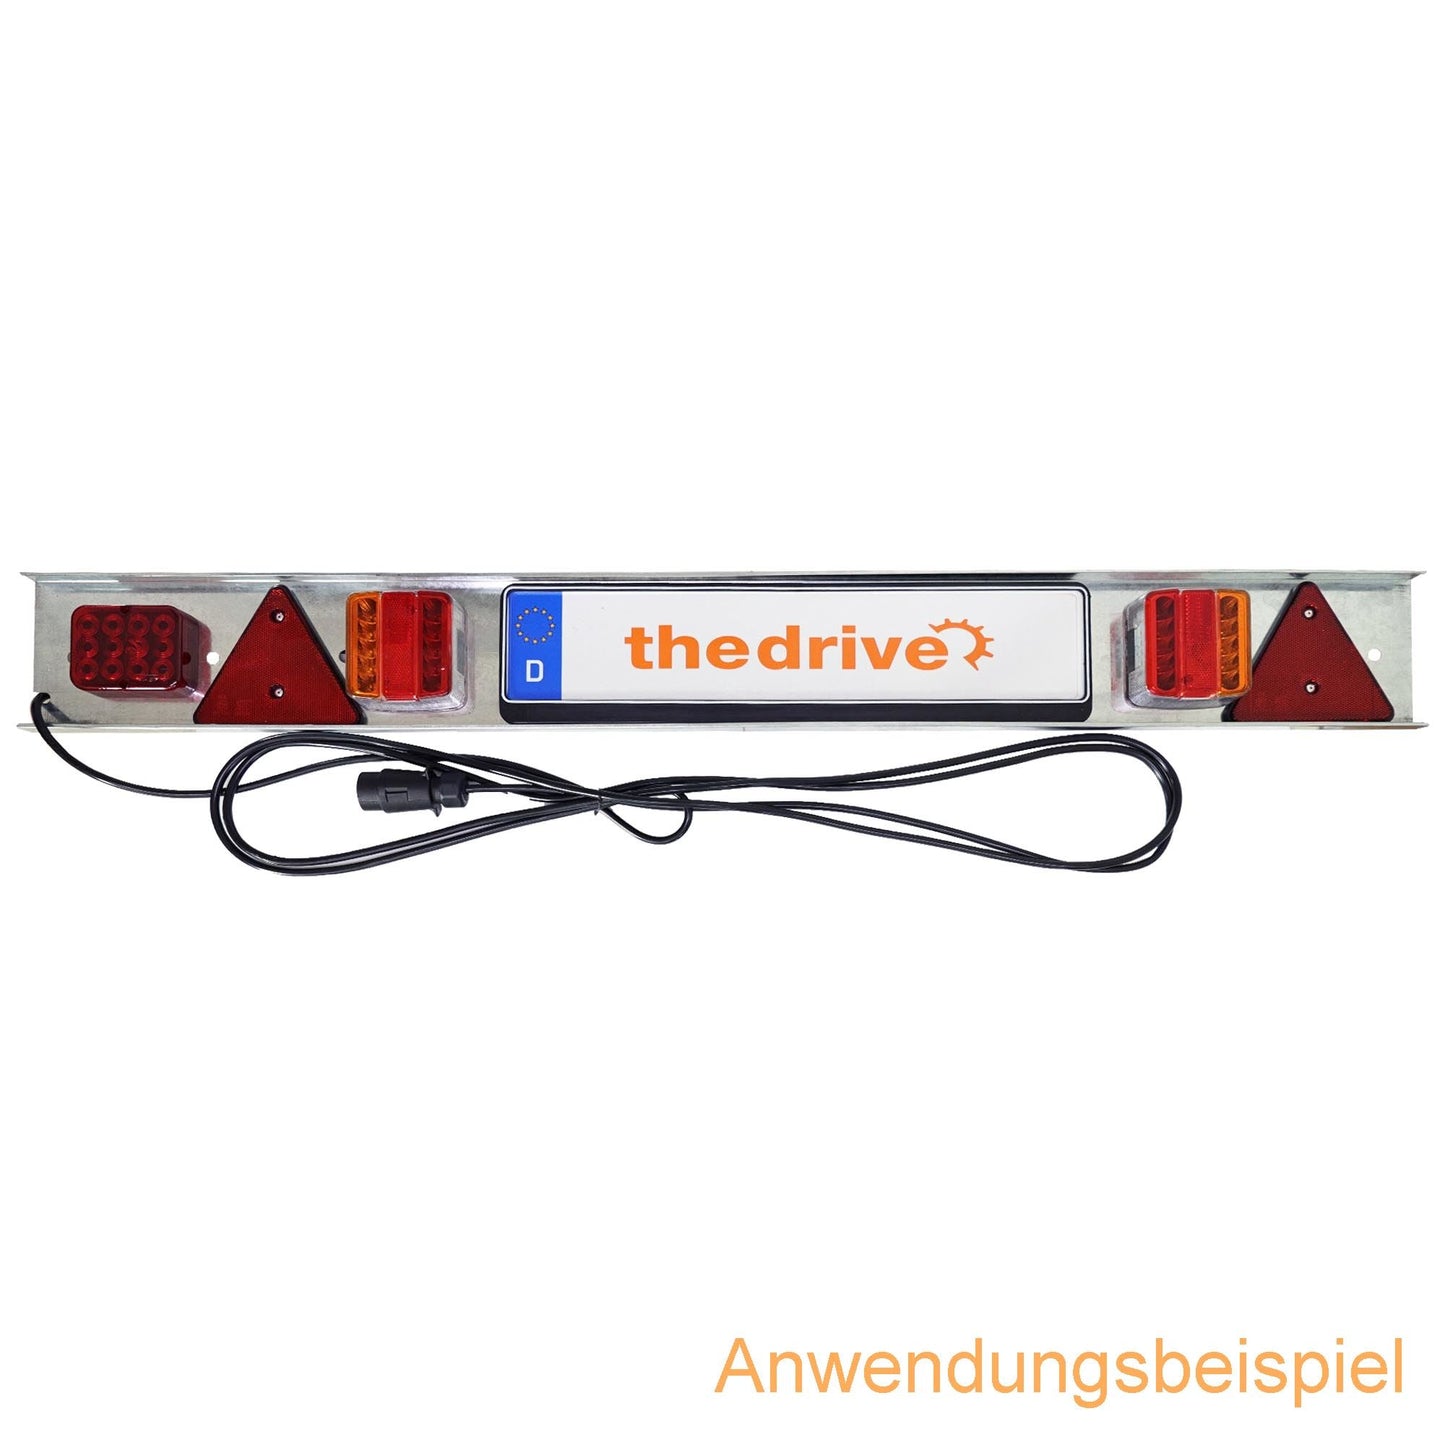 Anhänger LED Lichtleiste 125cm mit 5m Kabel 7-polig auf Metallträger - TMN-shop.de